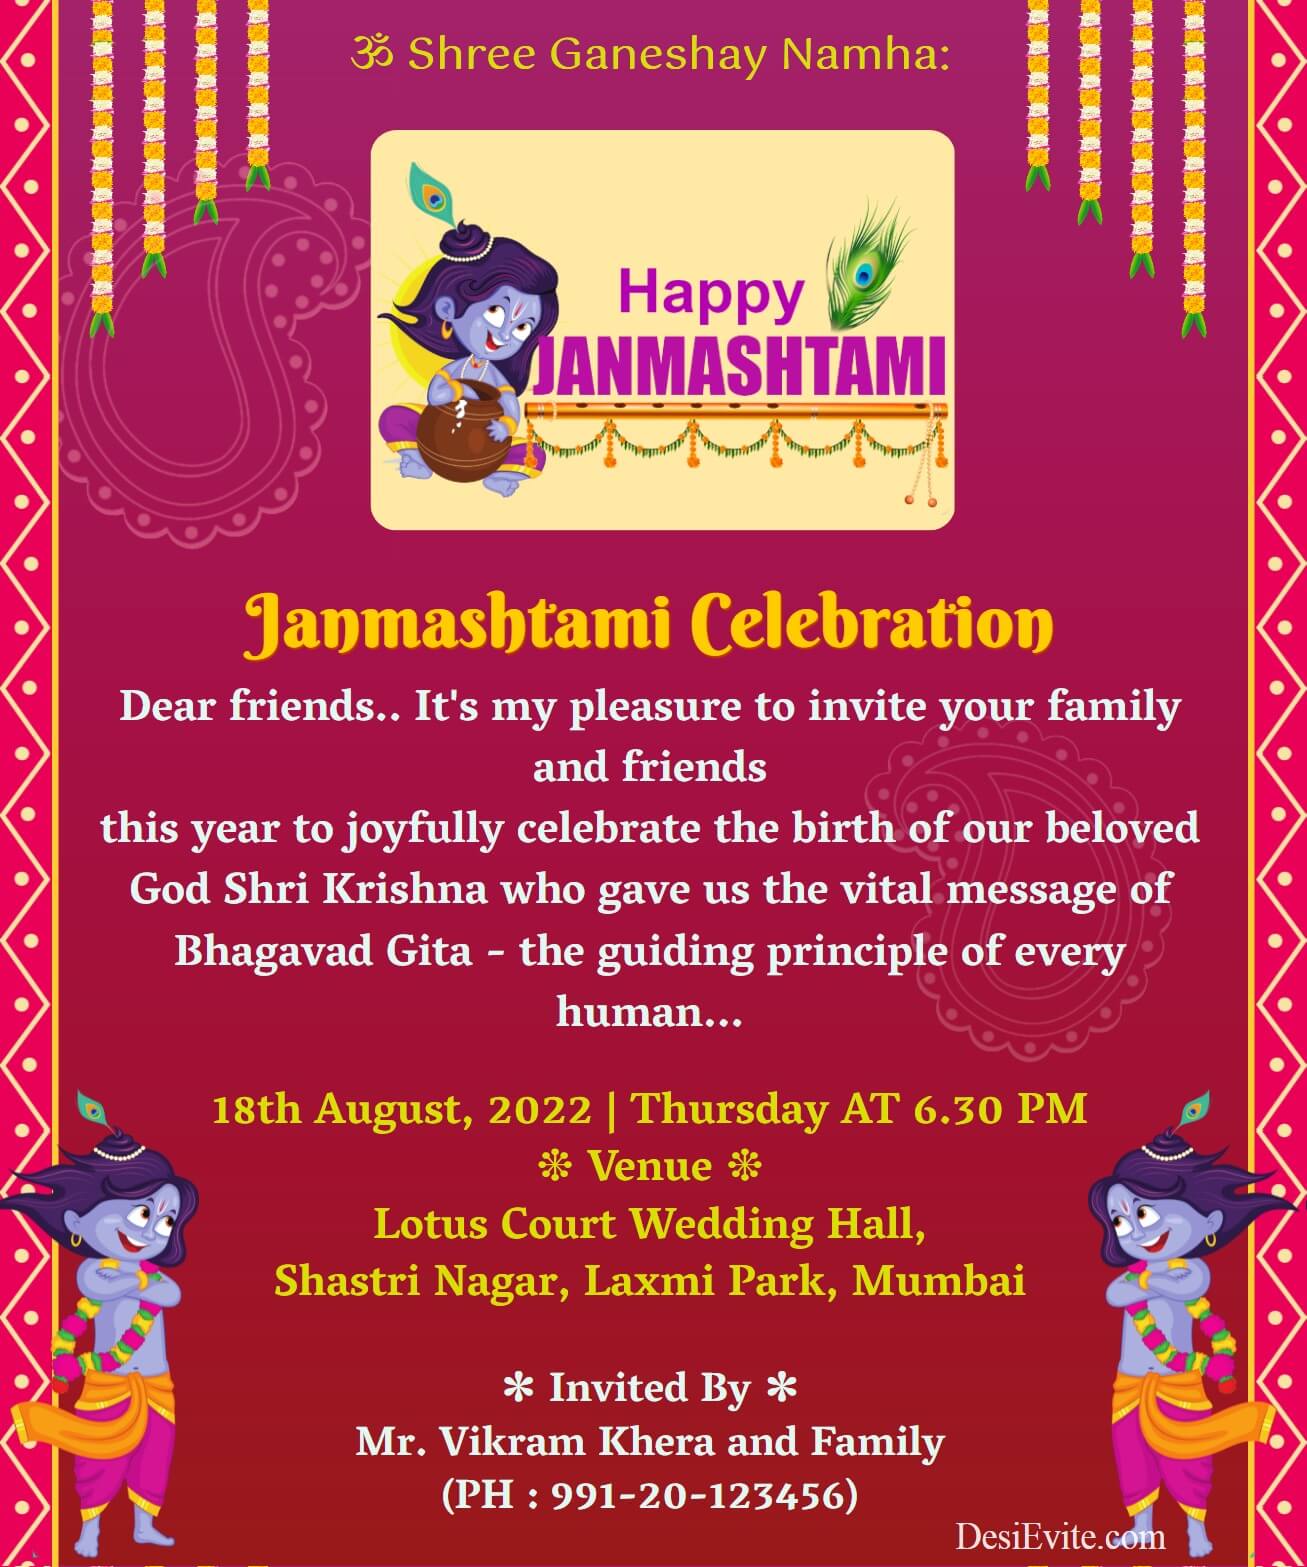 Krishna-Janmashtami-Invitation-ecard-border-red-background